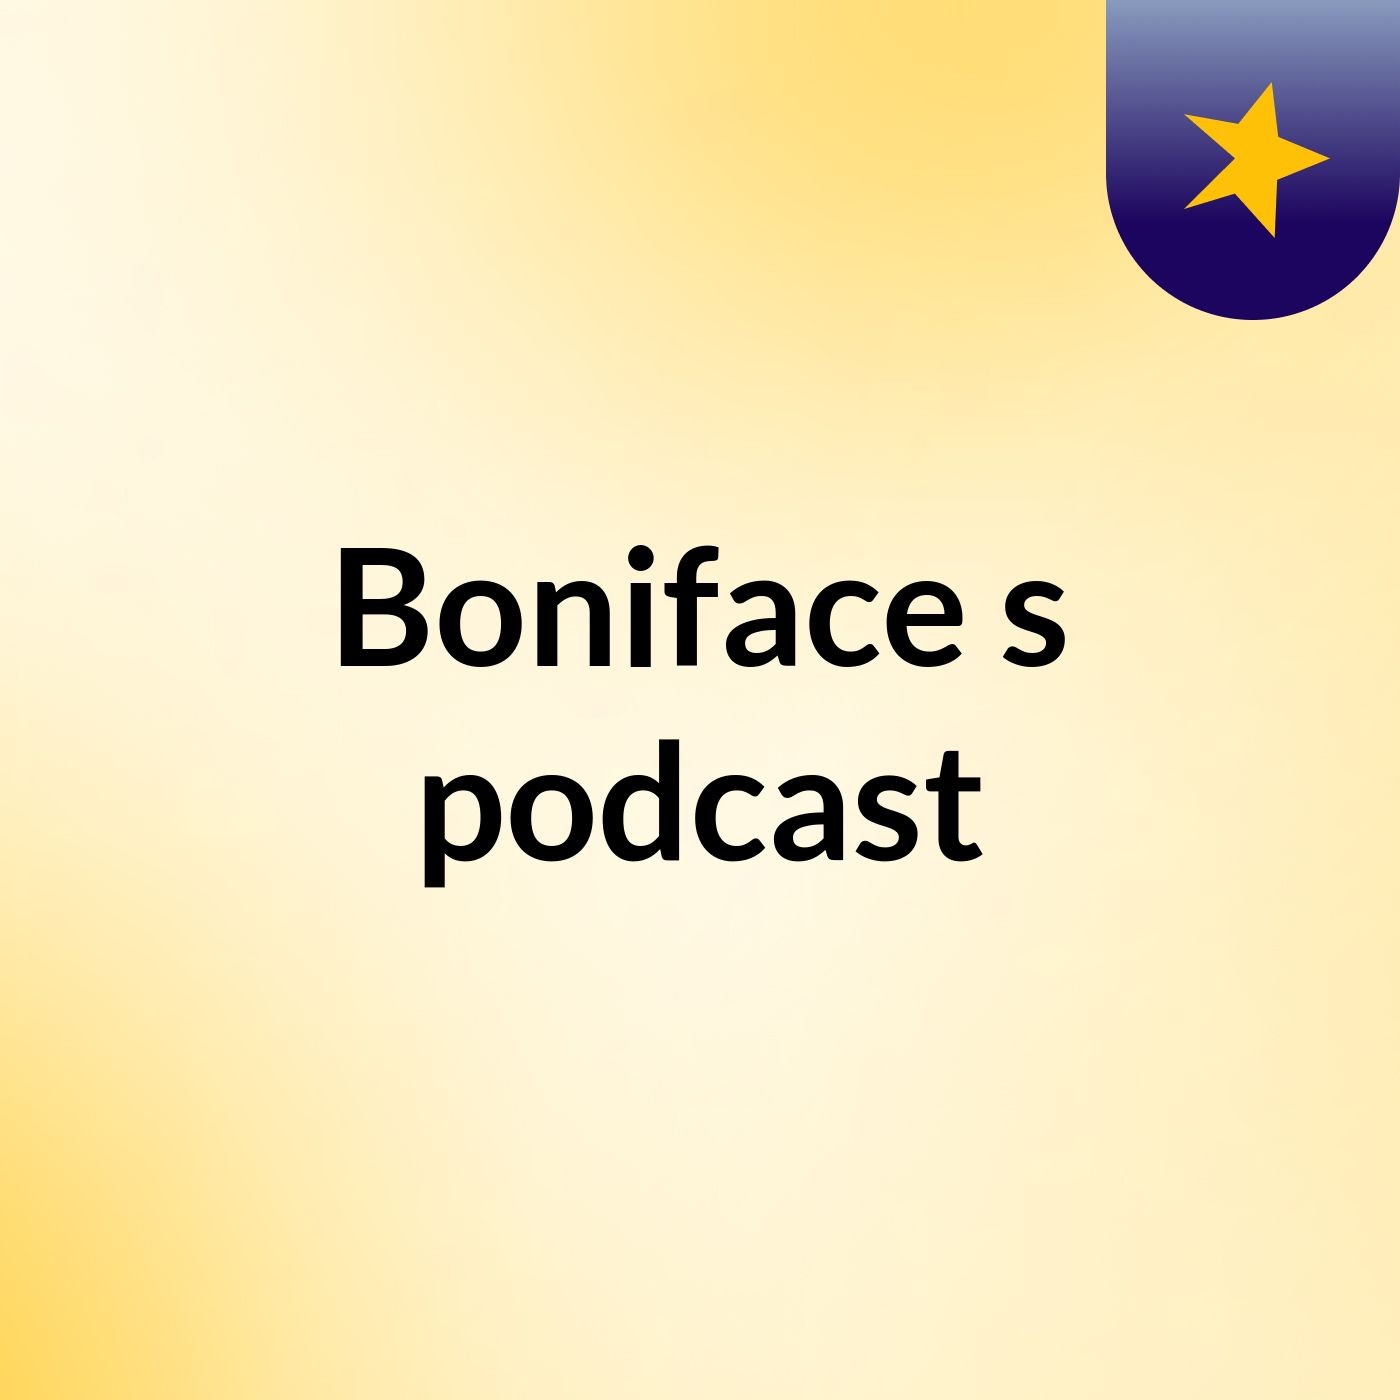 Episode 2 - Boniface's podcast